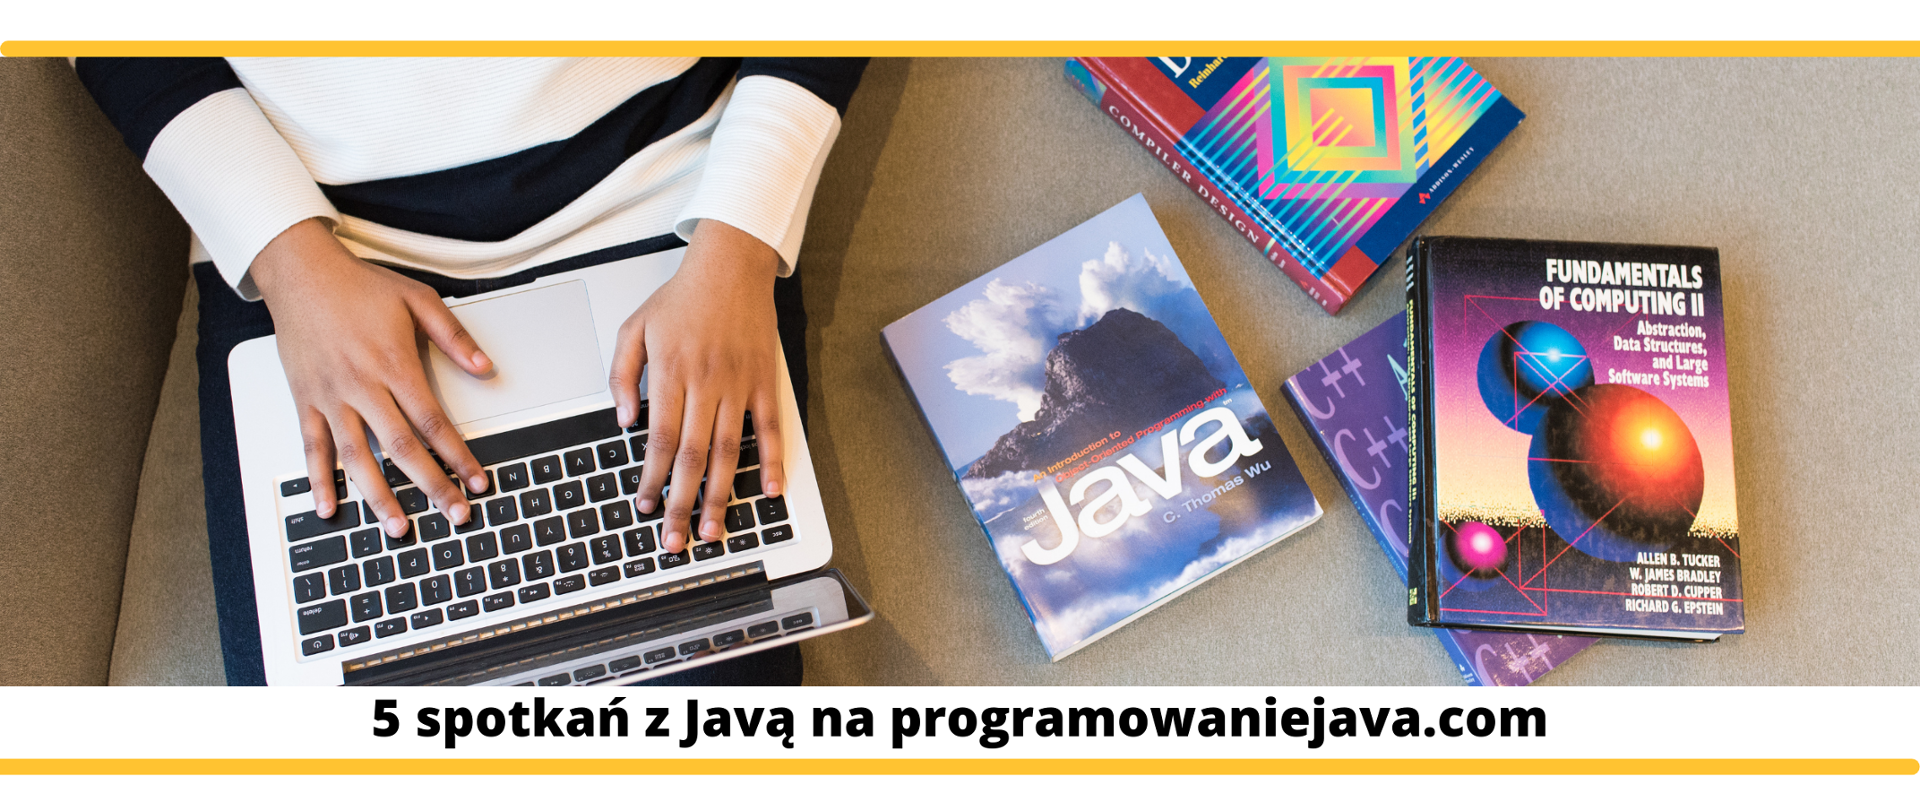 Na grafice widoczne są dłonie chłopca trzymającego laptopa na kolanach, obok niego widoczne są książki związane z programowaniem w Java. Pod obrazkiem widać czarny napis na białym tle: "5 spotkań z Javą na programowaniejava.com."